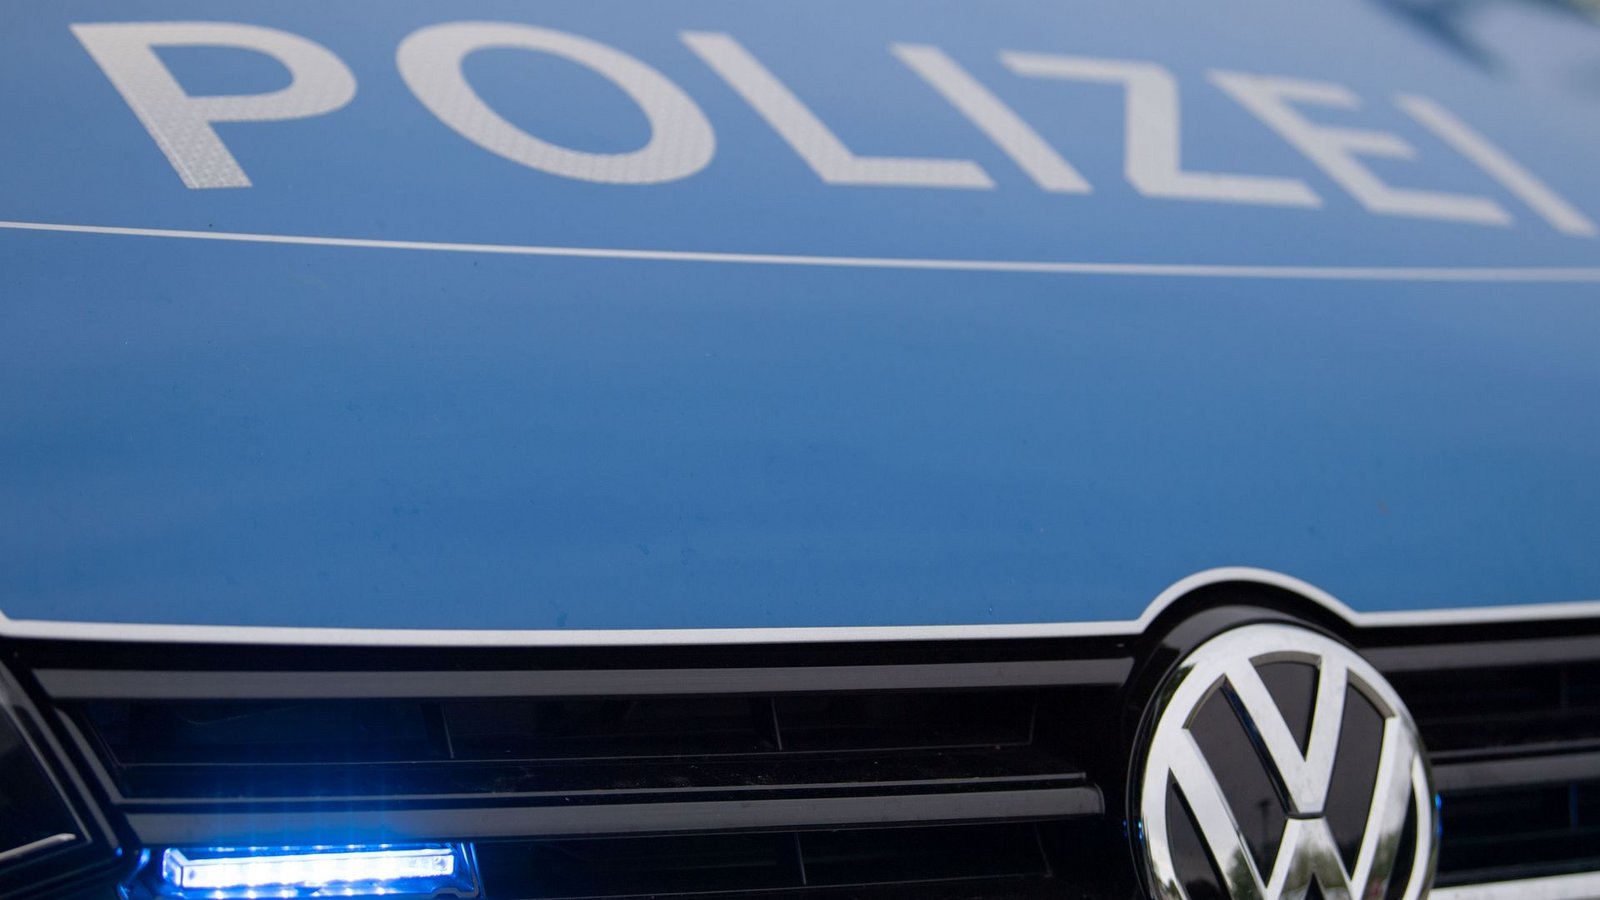 Die Polizei hat bei einer Hausdurchsuchung in Schöntal mehrere Waffen und eine große Anzahl Munitio gefunden.Foto: Lino Mirgeler/dpa